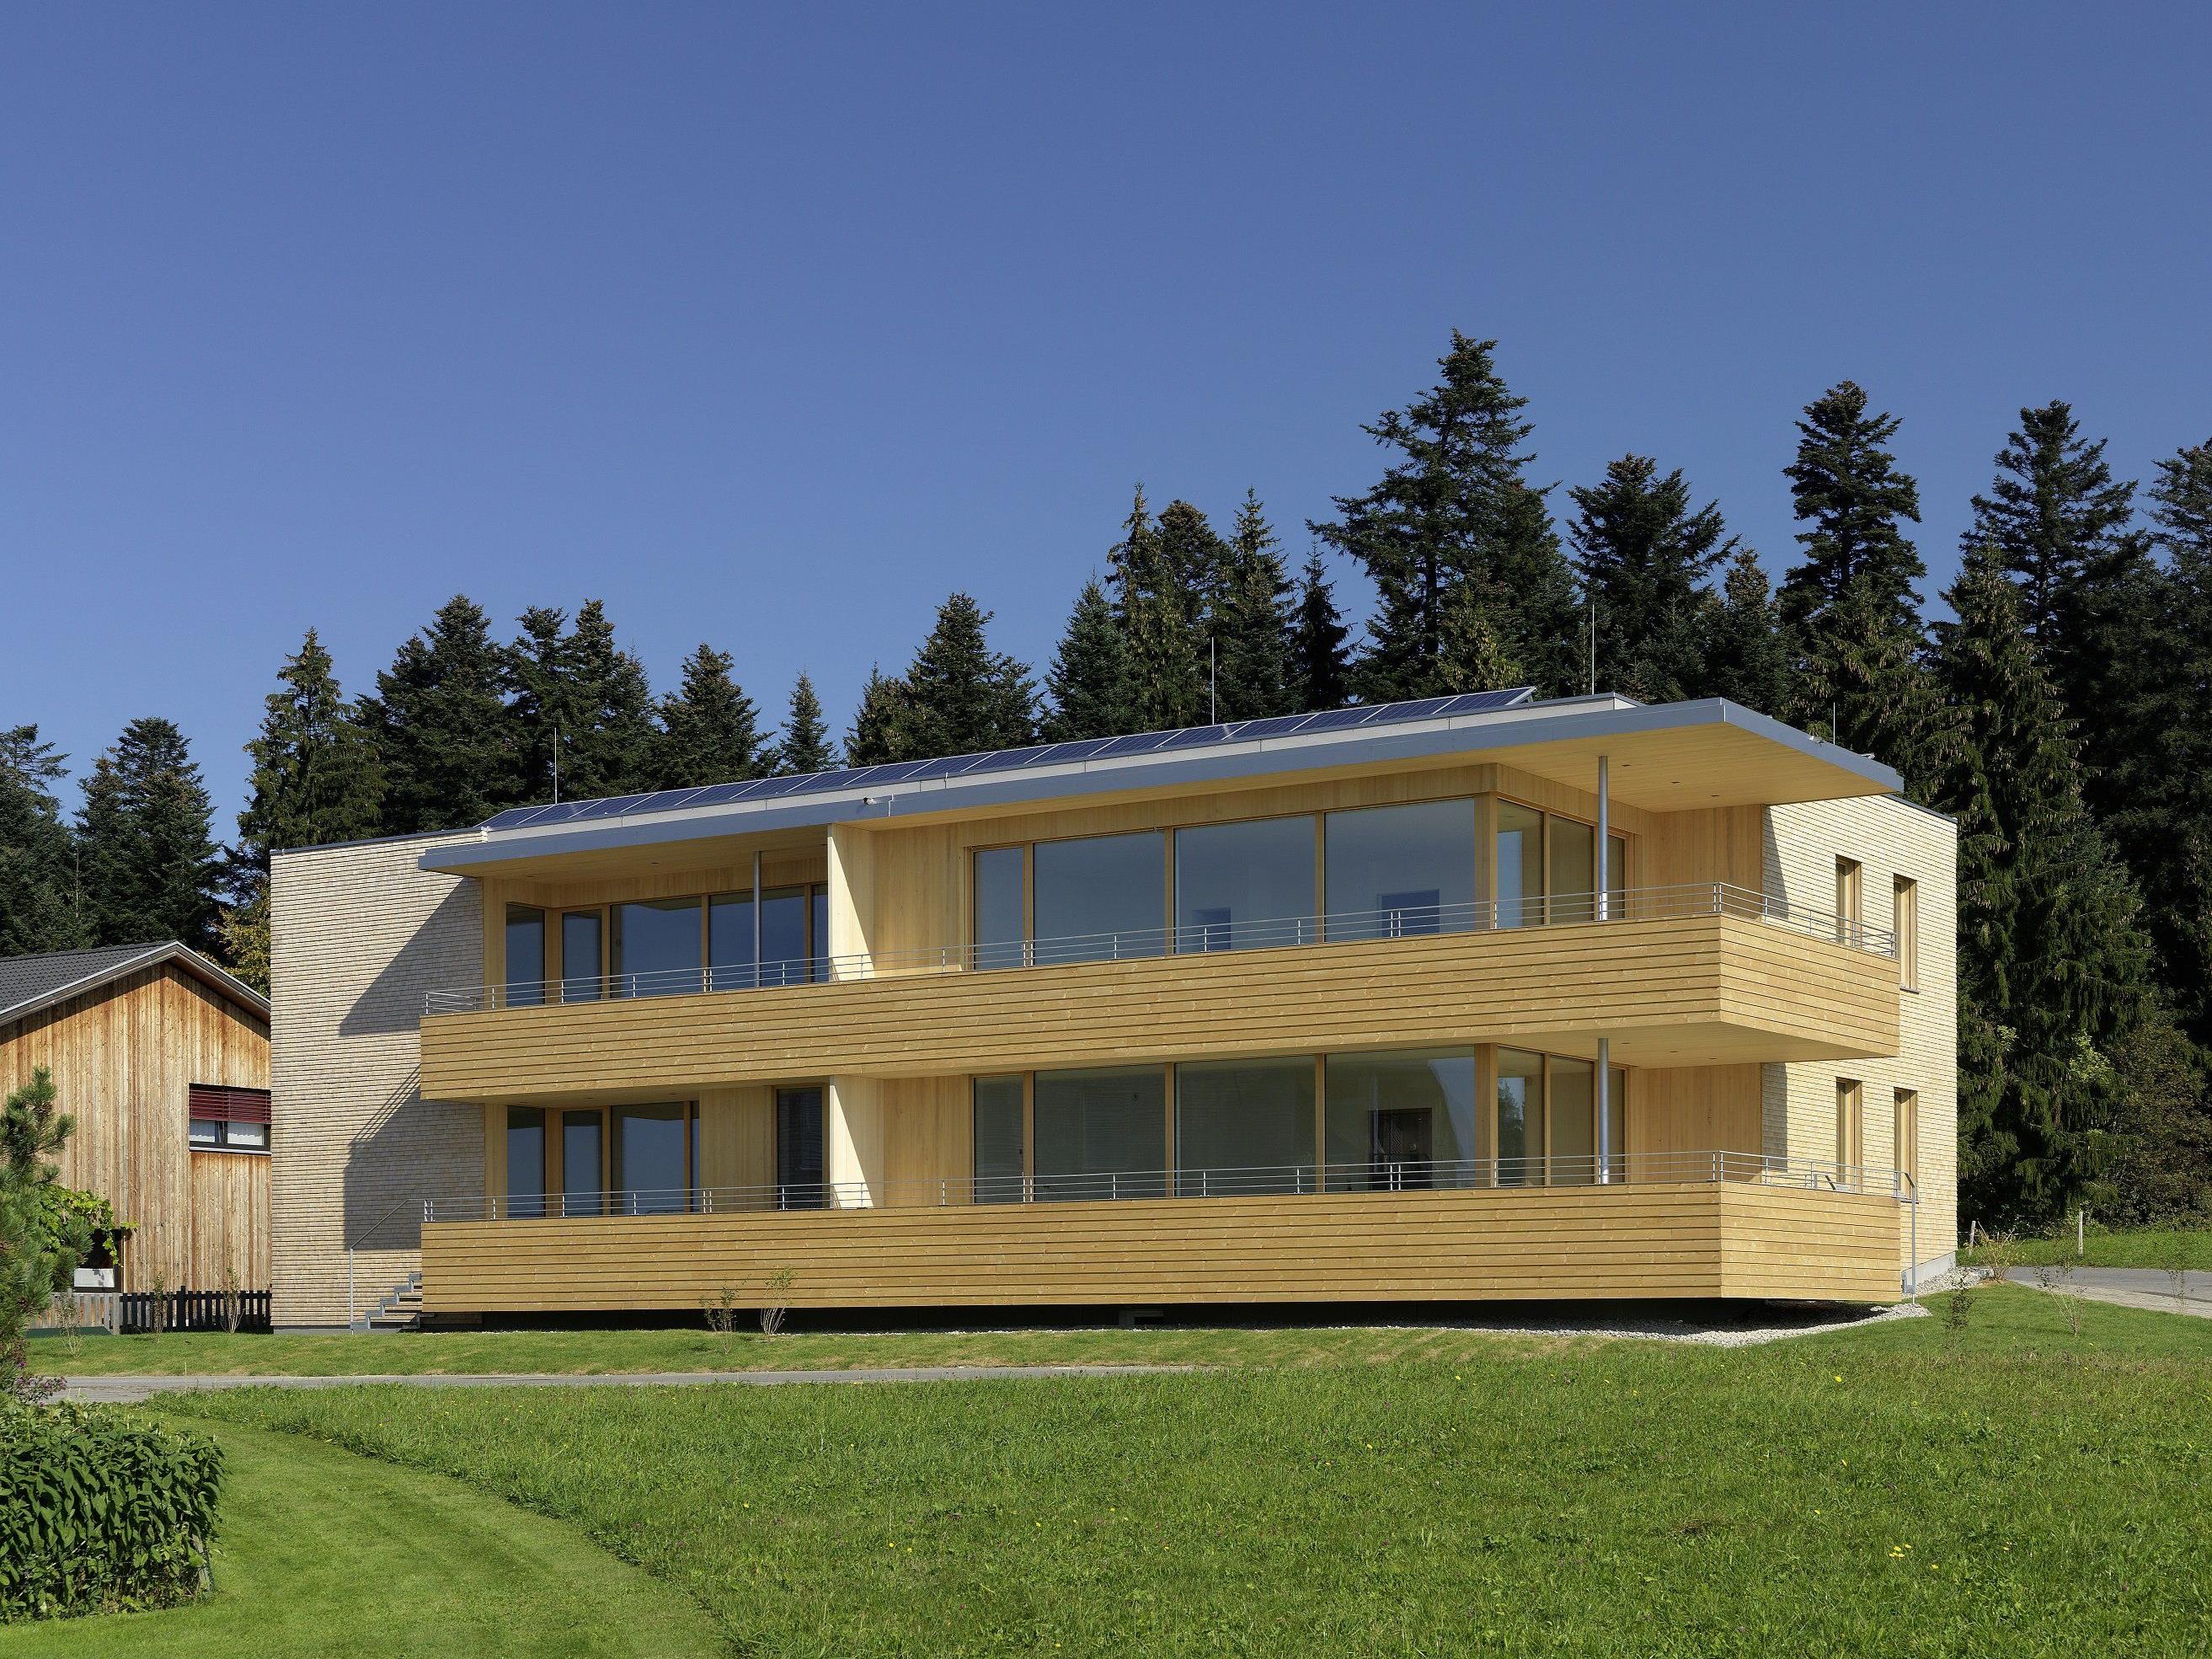 Das Passiv-Mehrfamilienhaus in Sulzberg wurde auf der Ecobuild in London einem internationalen Fachpublikum präsentiert.